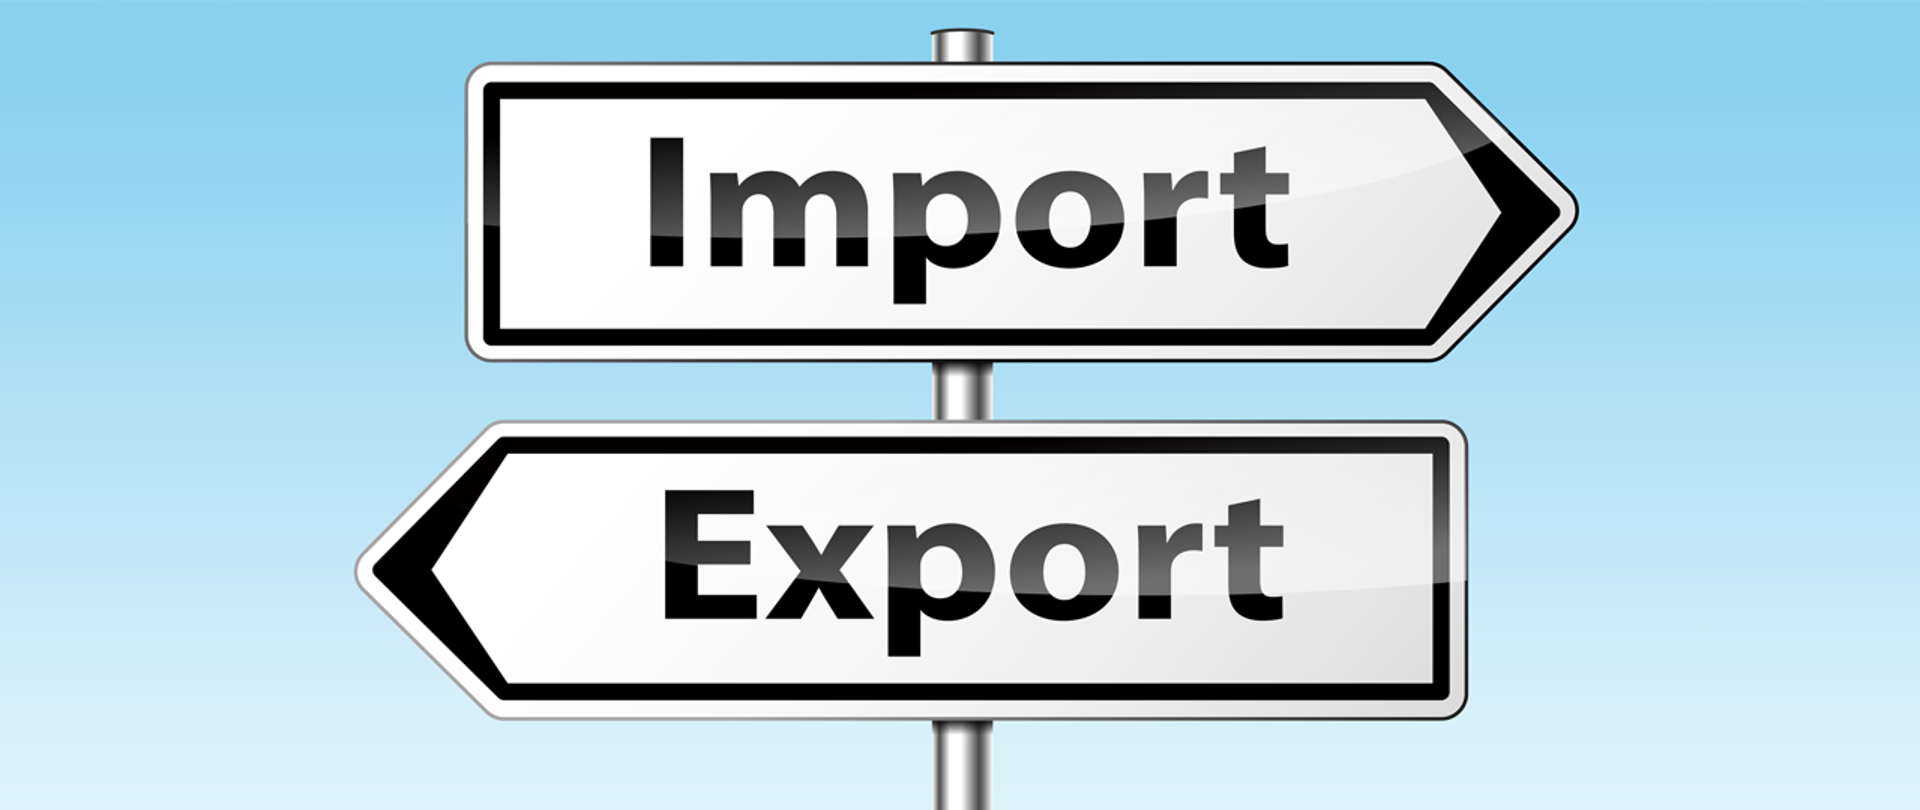 Grafika przedstawia drogowskazy: Import, Export